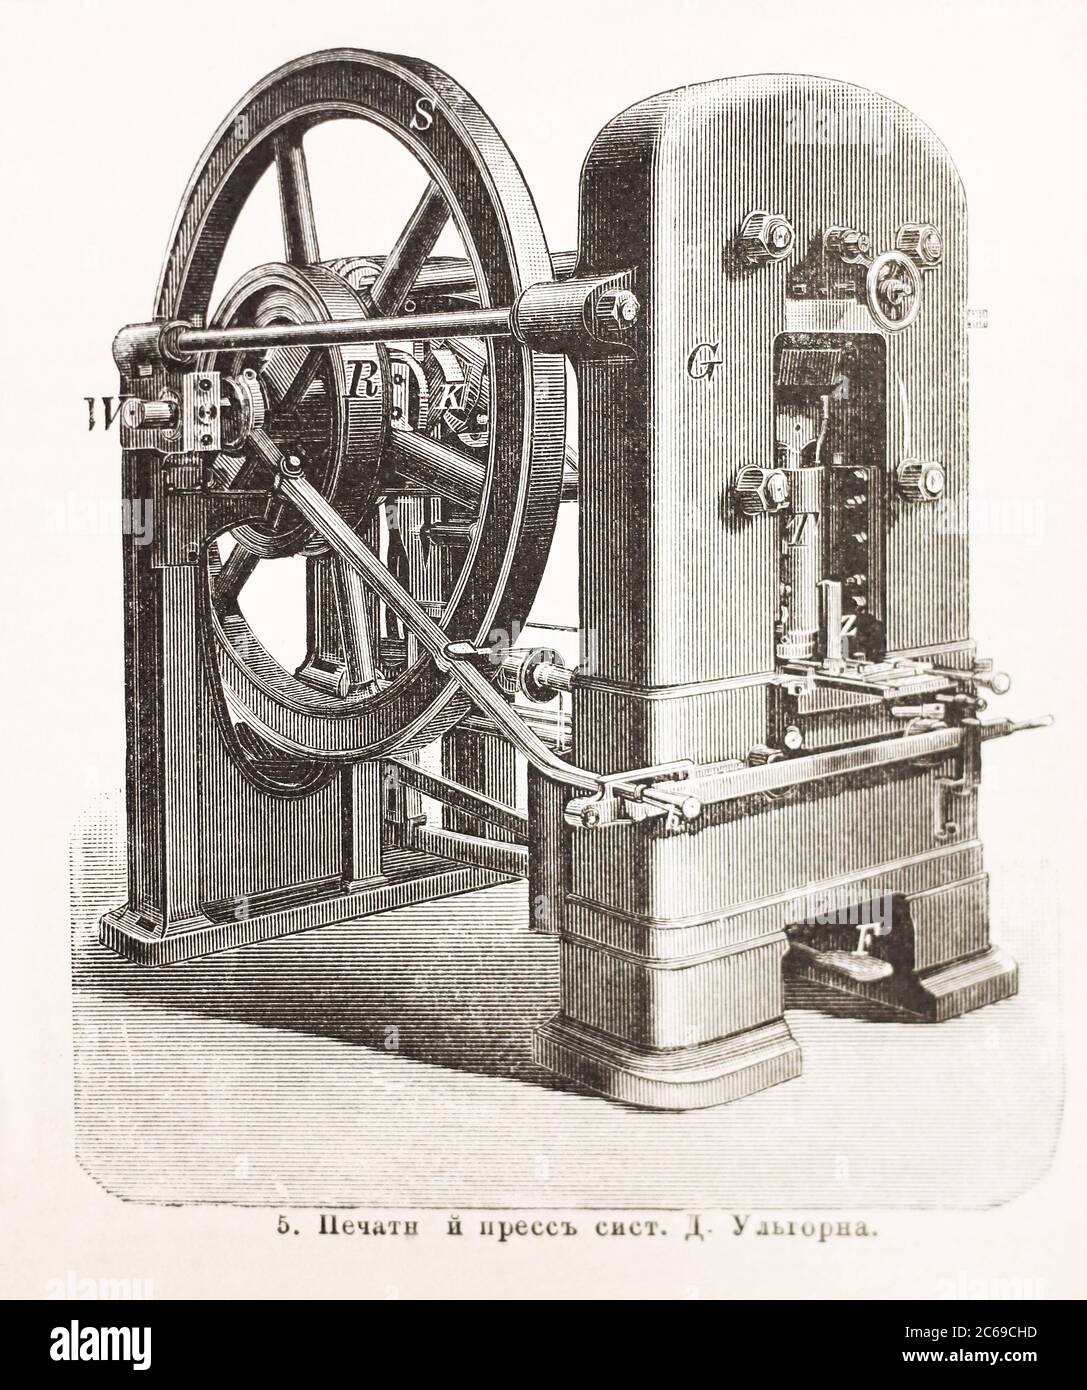 Machine pour l'impression et la fabrication de l'argent, conçue par D. Ulhorn. Gravure du XIXe siècle. Banque D'Images